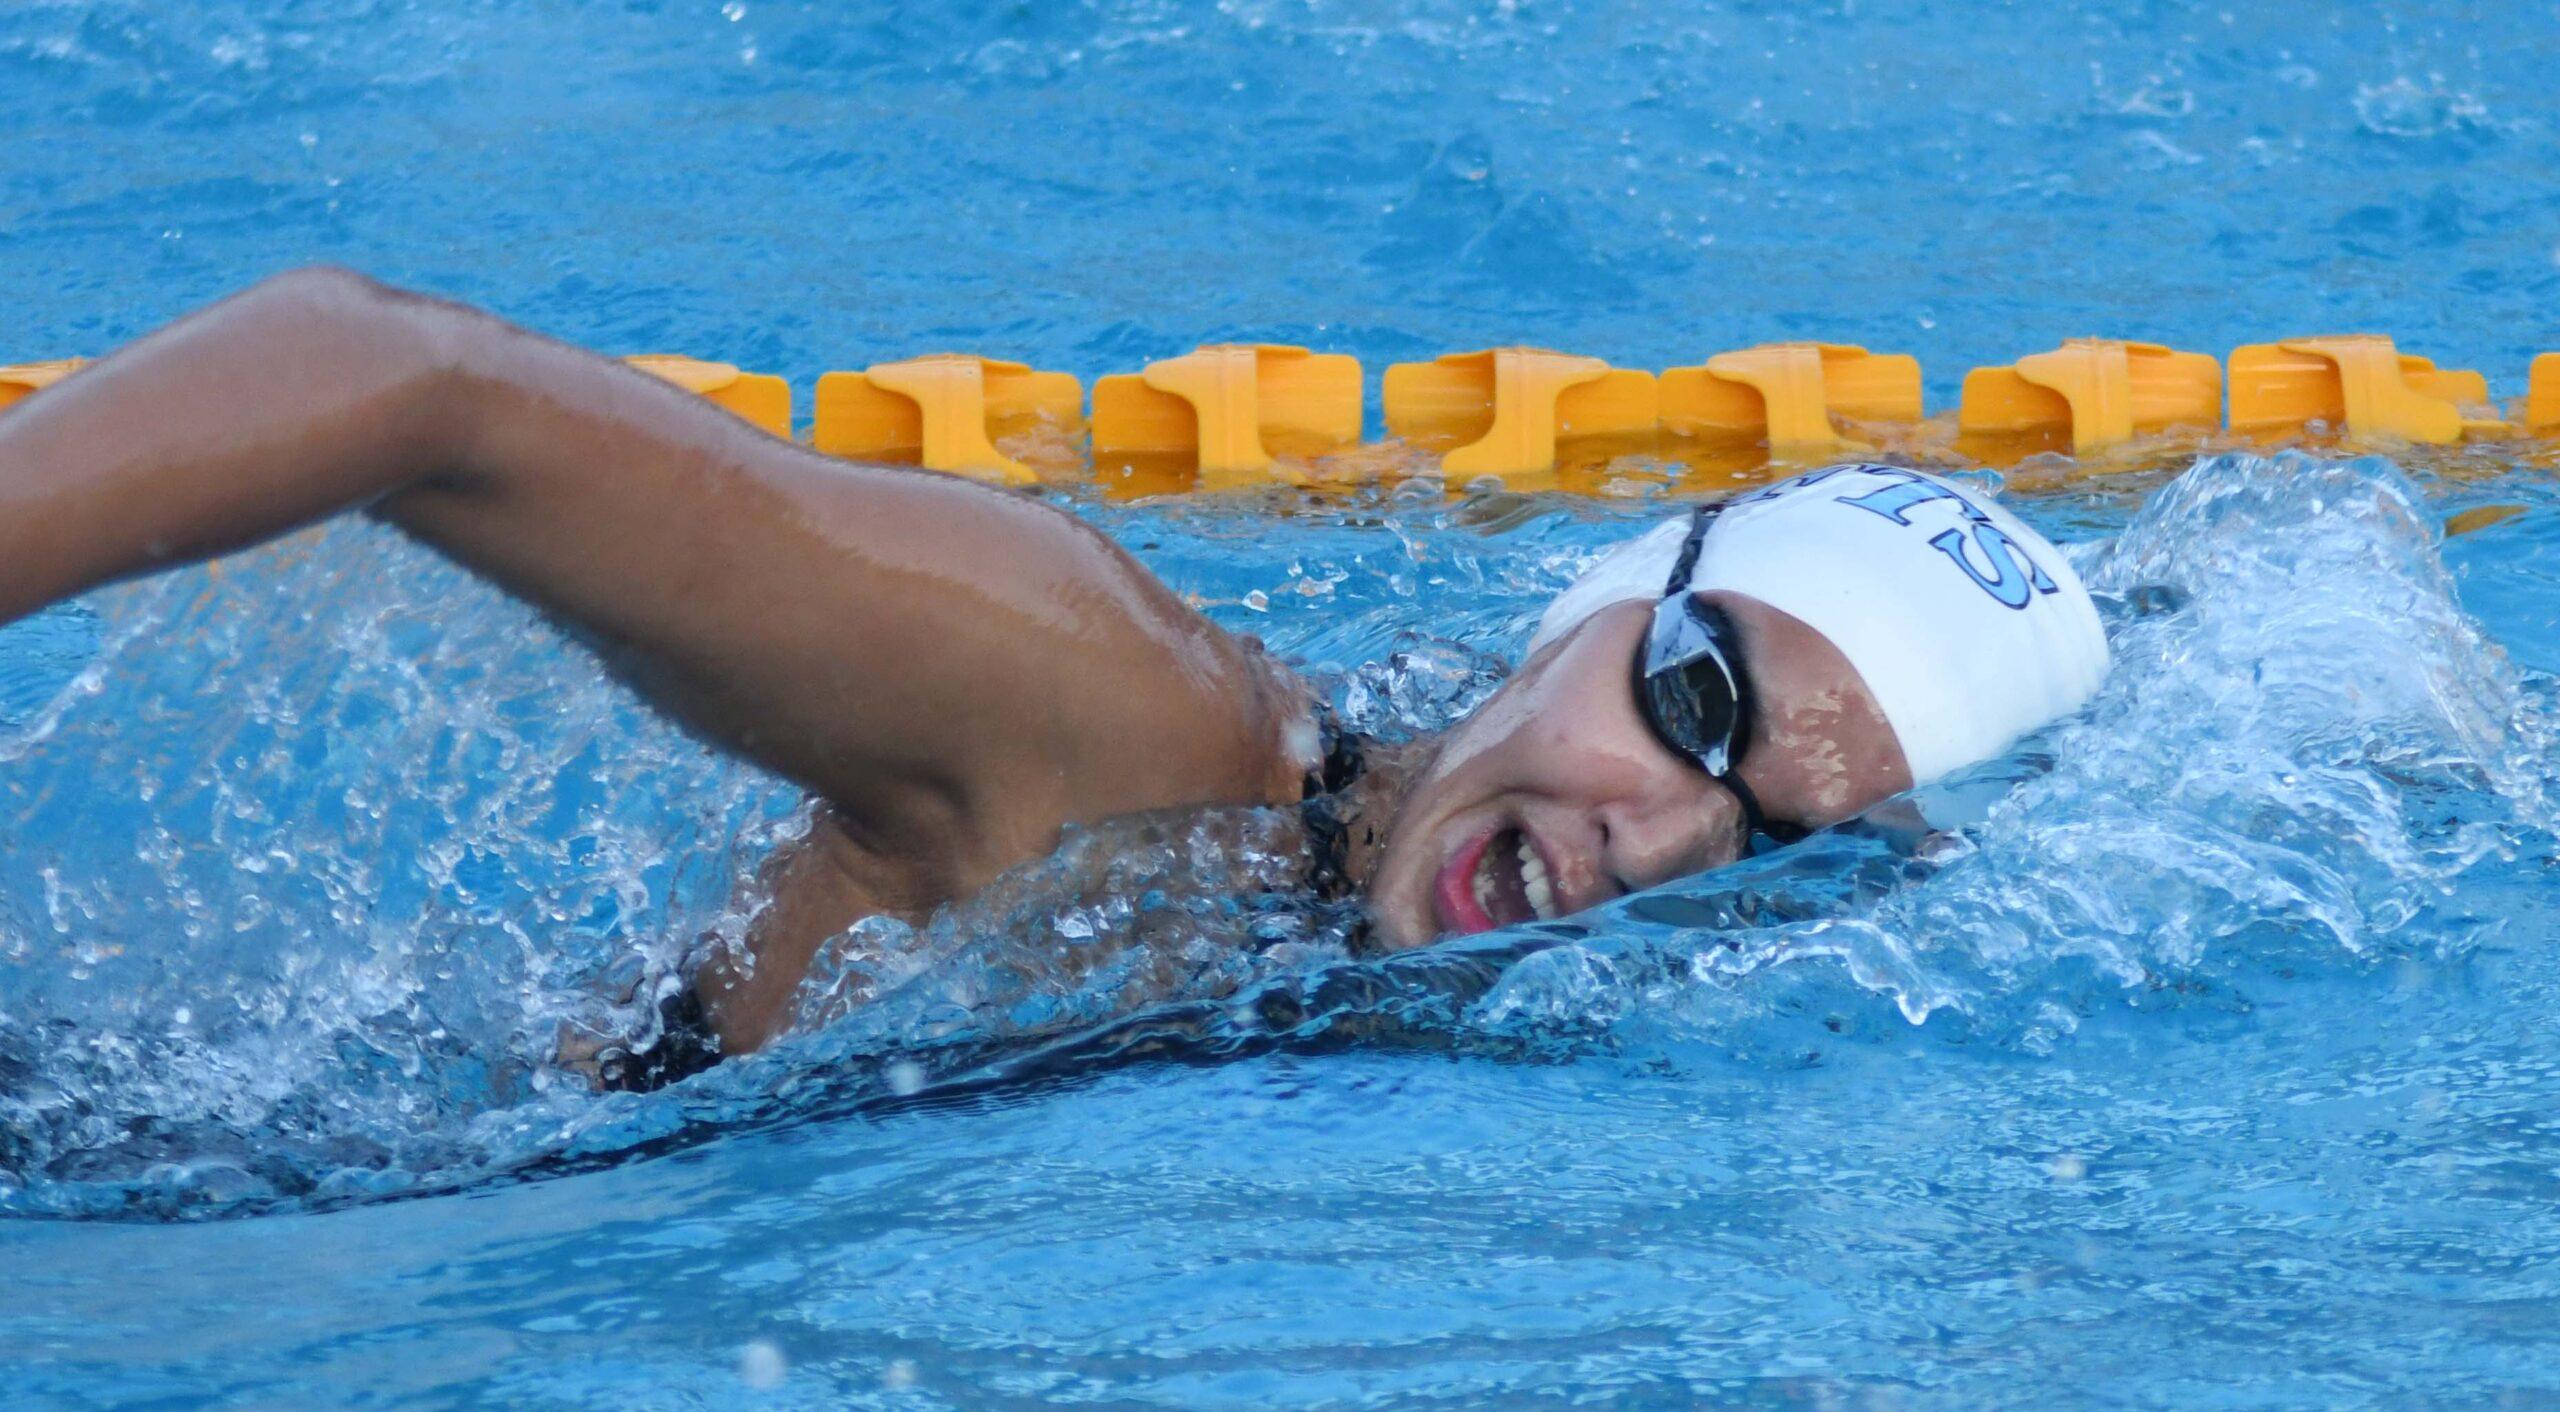 Gaurika sing - swimming Record holder